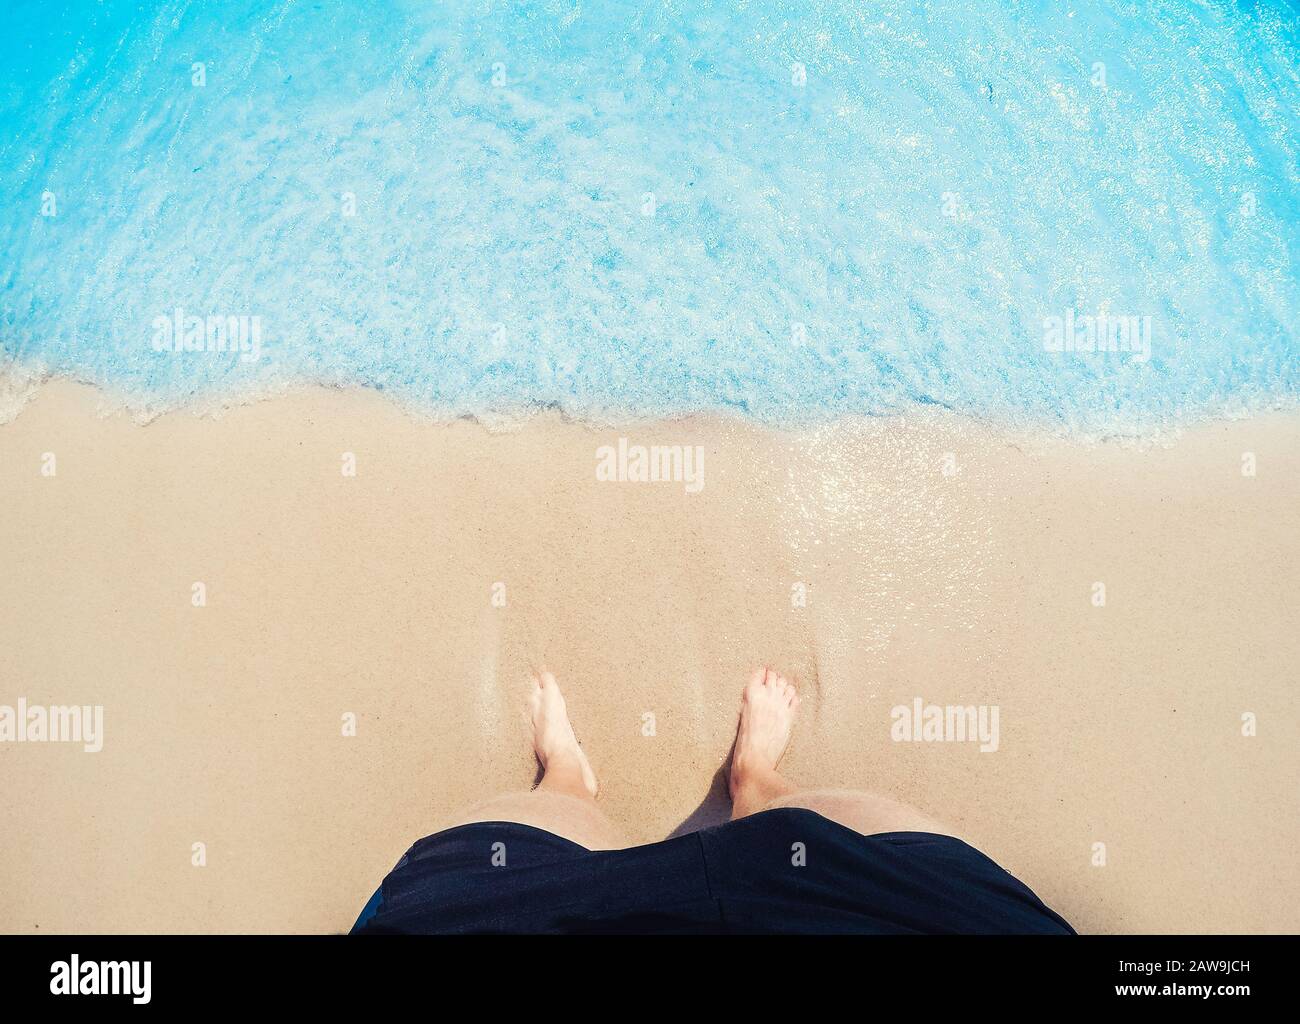 Füße des Menschen Fuß in goldenem Sand werden von Wellen des blauen Meeres gewaschen, Draufsicht. Freelance-Freelancer-Konzept. Stockfoto